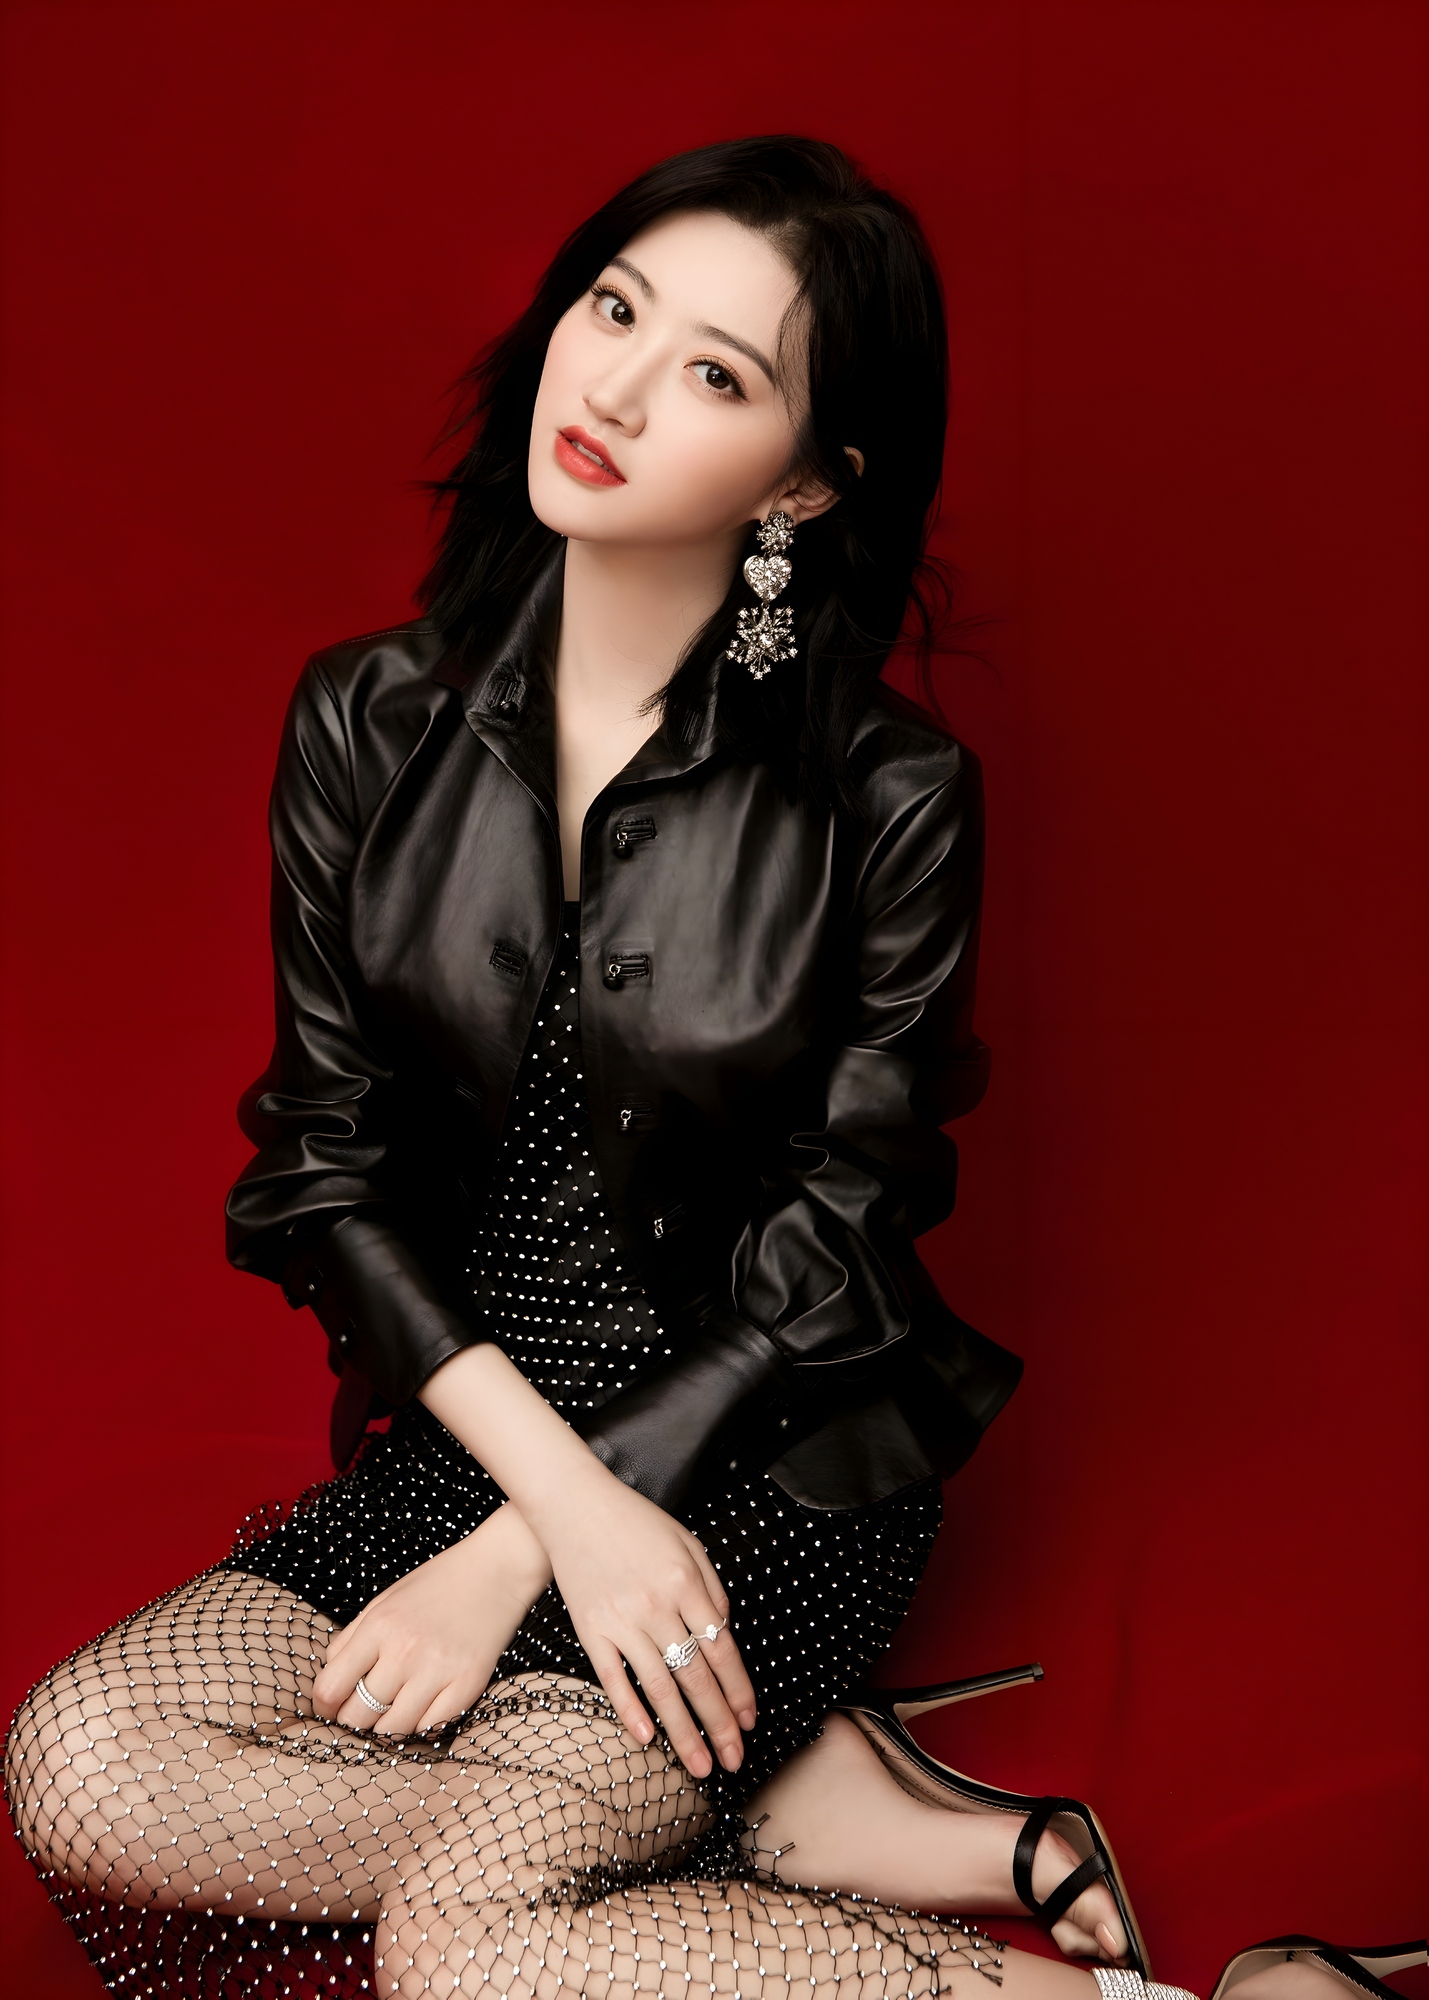 Jing Tian Women Actress Chinese Asian Dark Hair Long Hair 1429x2000